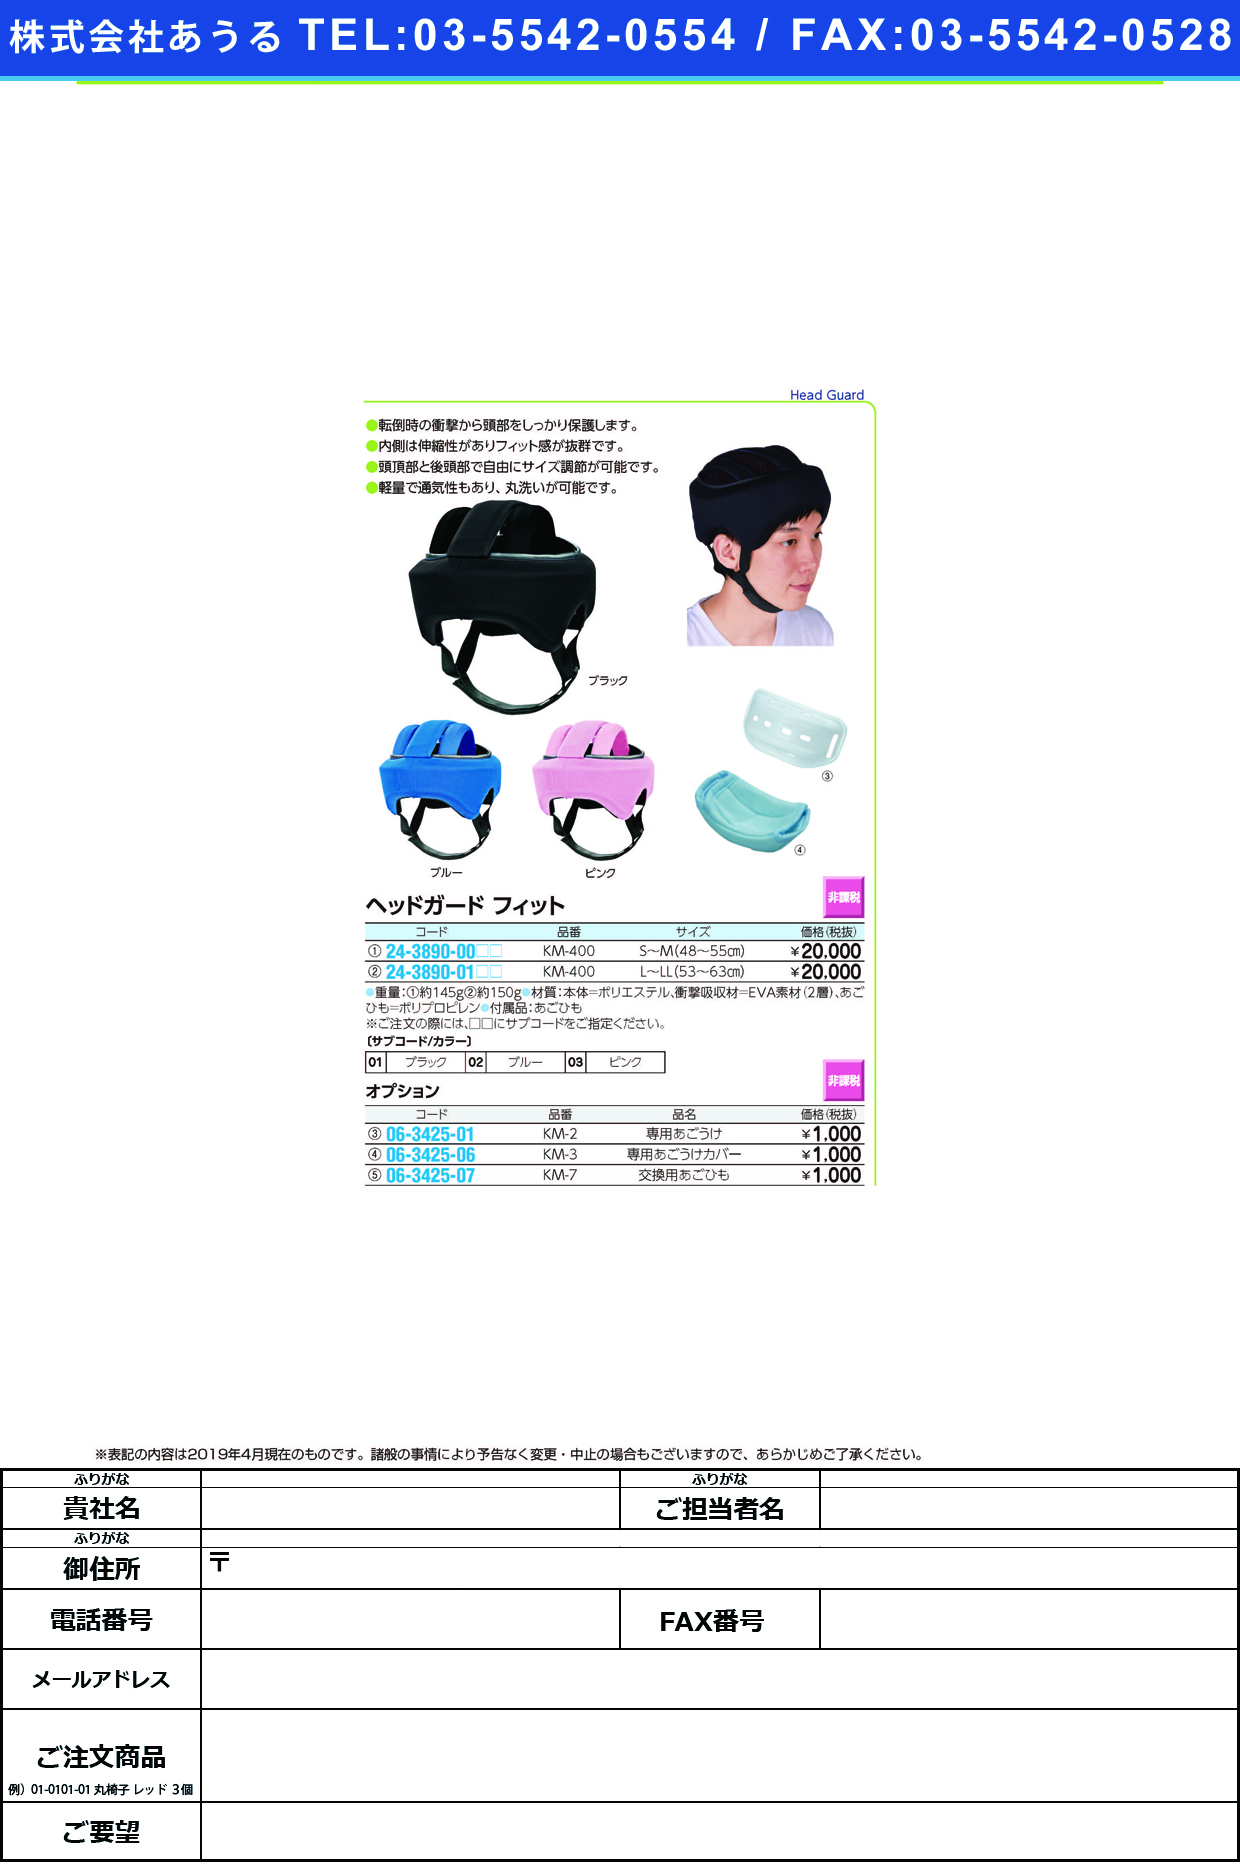 (24-3890-00)ヘッドガードフィット KM-400(S-M) ﾍｯﾄﾞｶﾞｰﾄﾞﾌｨｯﾄ ピンク【1個単位】【2019年カタログ商品】